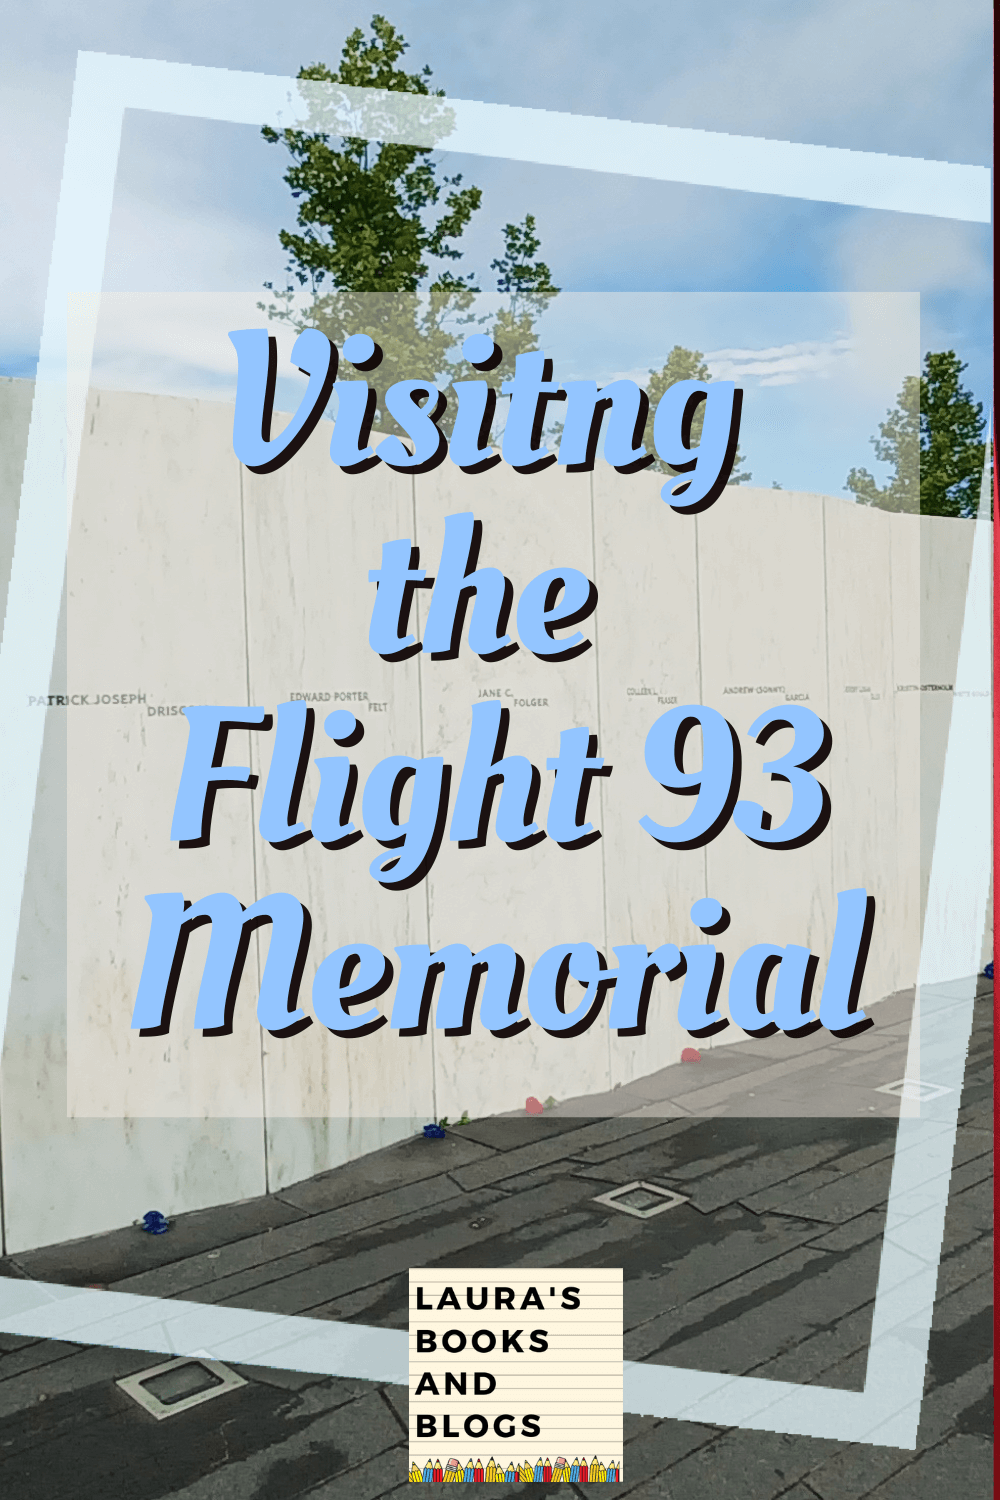 Visiting the Flight 93 Memorial